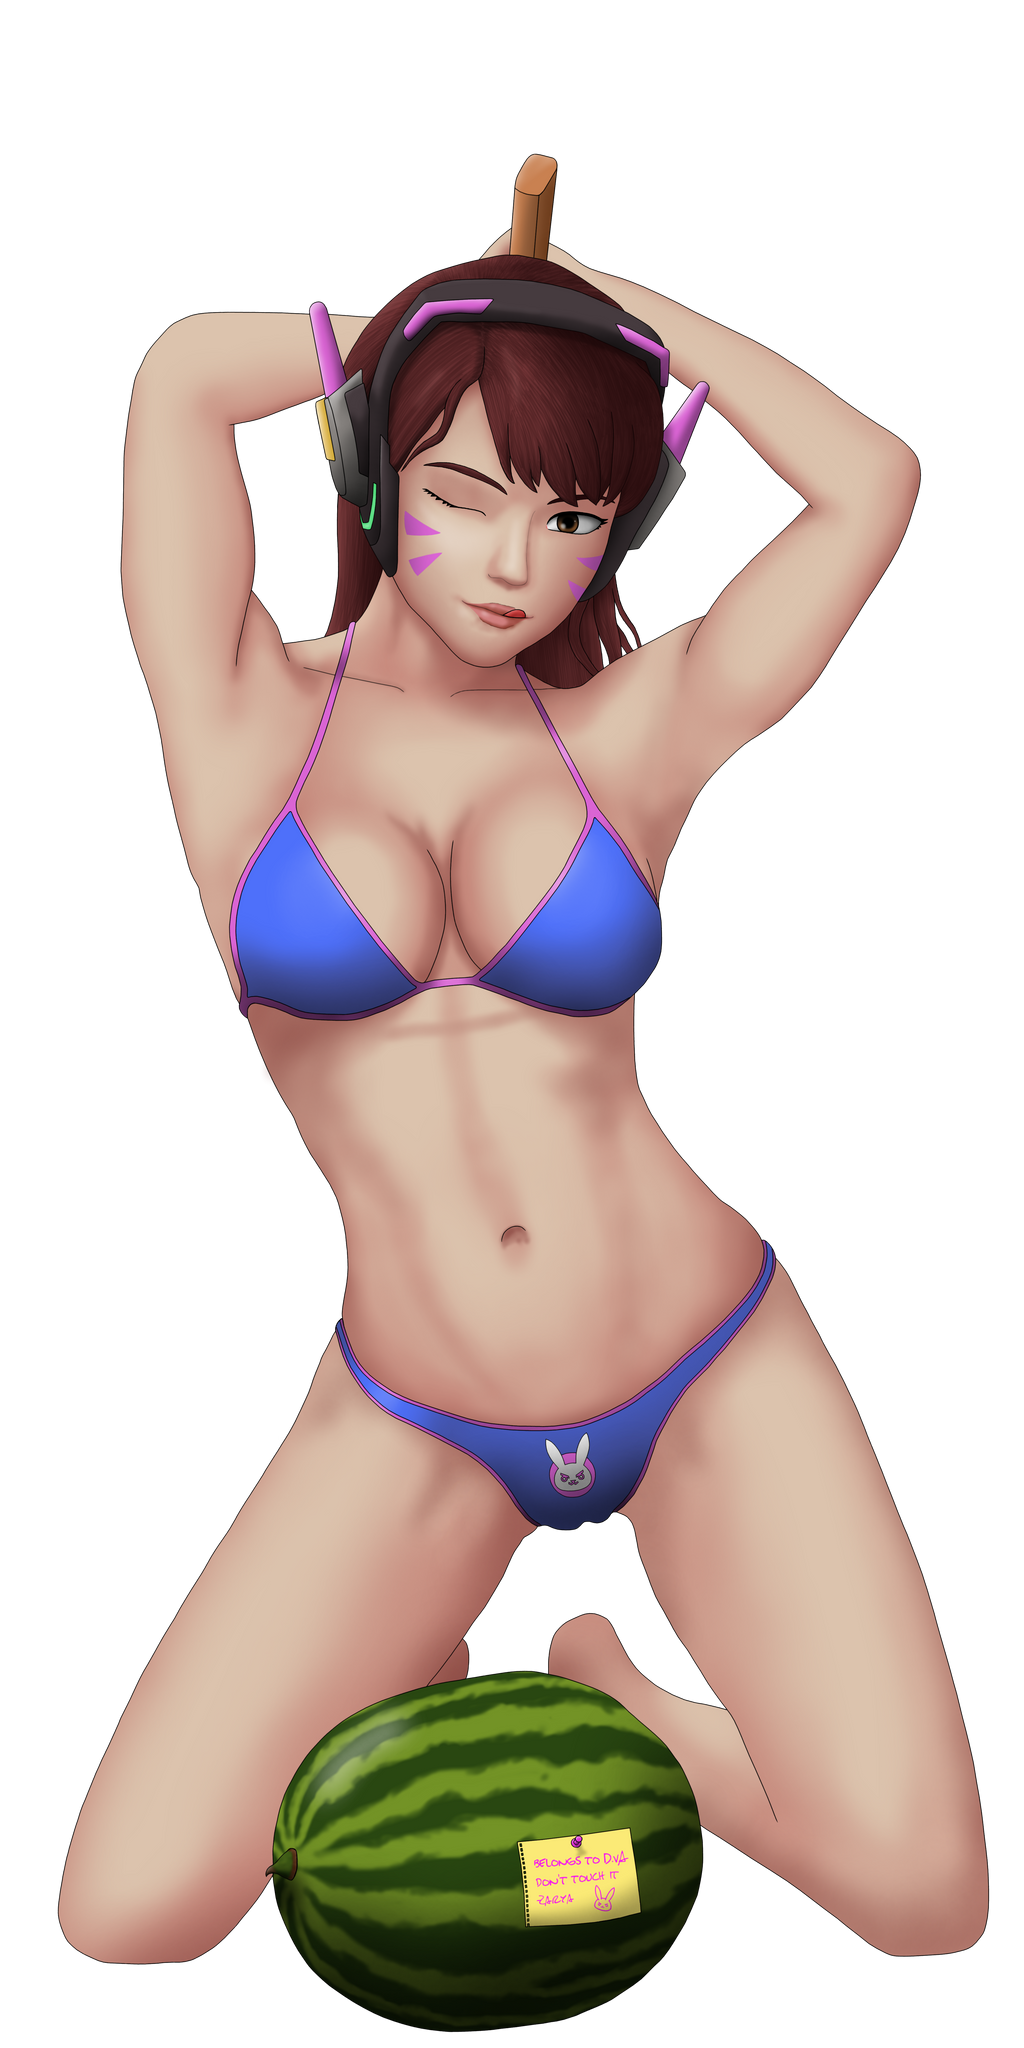 bikini D.Va smashing some melons - Overwatch by Ascharoot.